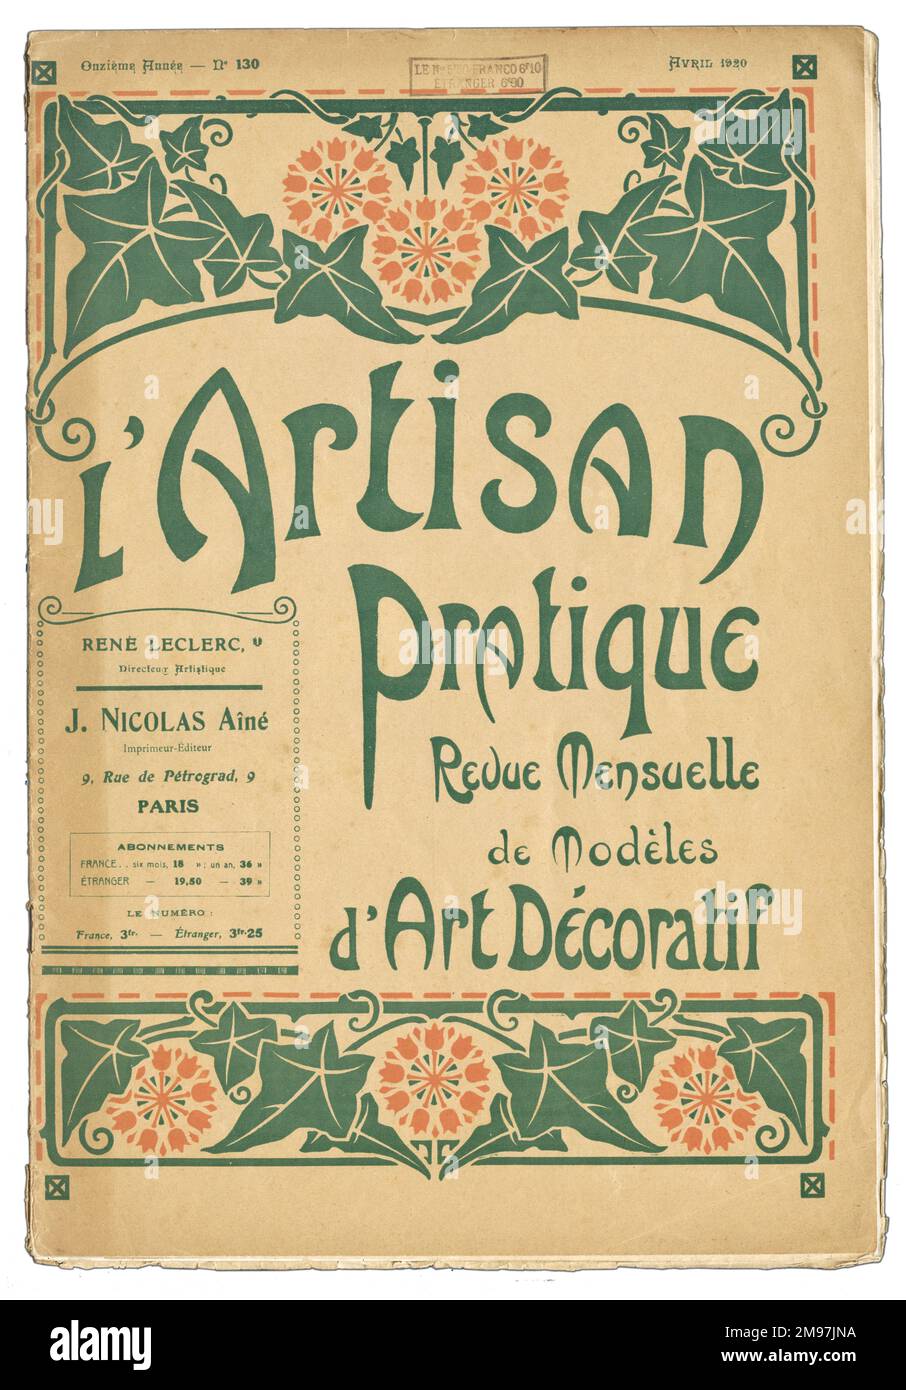 Couverture pour un magazine d'art décoratif français, l'Artisan pratique, avril 1920. Banque D'Images